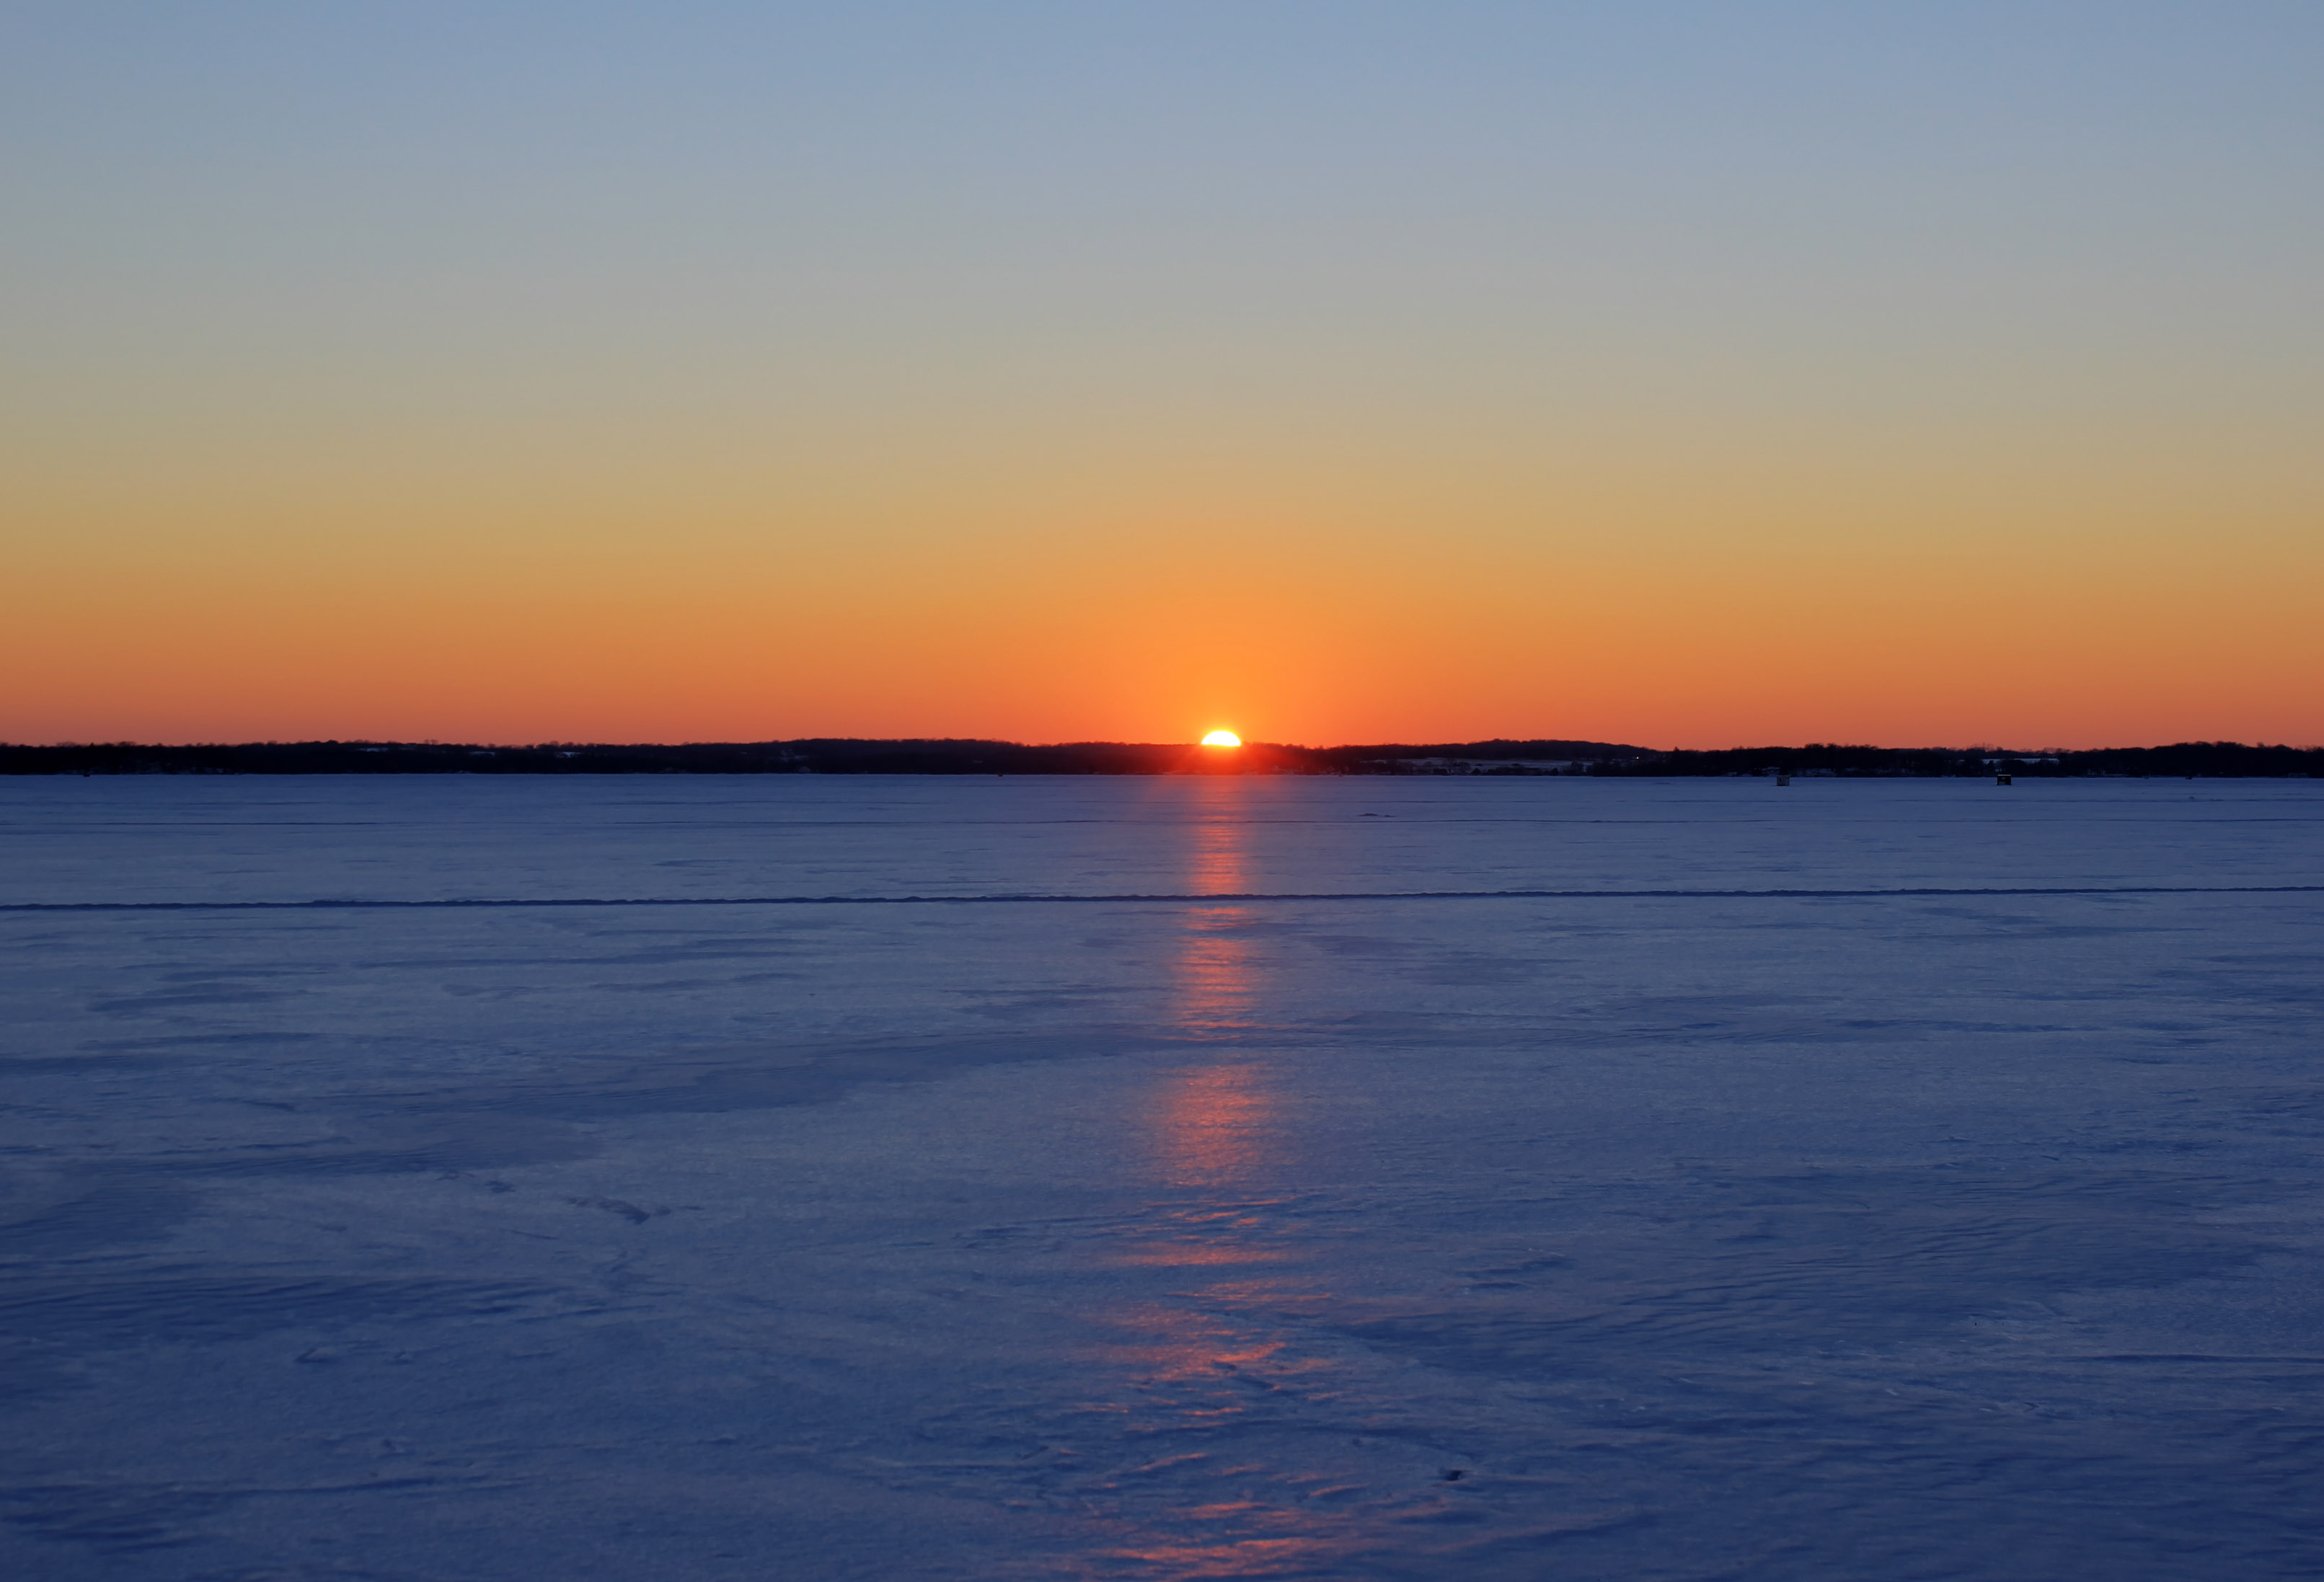 Setting sun at Lake Kegonsa State Park, Wisconsin image - Free stock ...